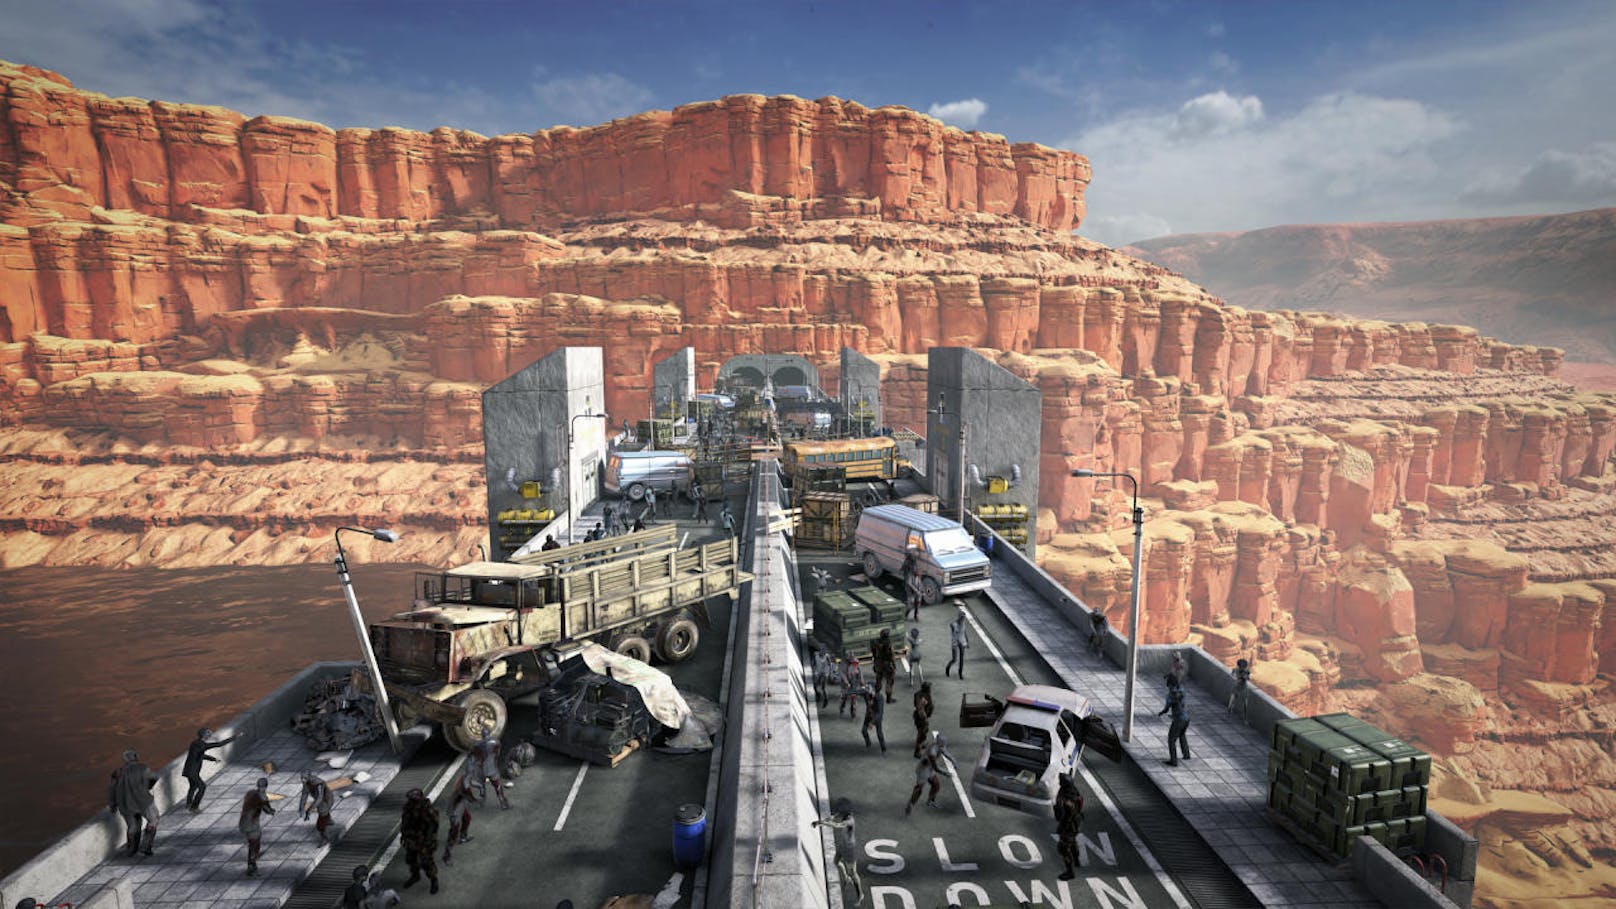 Auch zum VR-Zombie-FPS Arizona Sunshine gibt es Neuigkeiten. Der Titel erscheint 2019 für Oculus Quest, der dazugehörige The Damned DLC ist schon ab August verfügbar. Der VR-Zombie-Shooter Arizona Sunshine ist bereits 2016 für gängige VR-Plattformen erschienen. Ab 2019 können sich Spieler auch auf Oculus Quest im amerikanischen Südwesten in die Zombieapokalypse stürzen. Am 27. August erscheint zudem der The Damned DLC für PlayStation VR und PC-VR-Headsets.